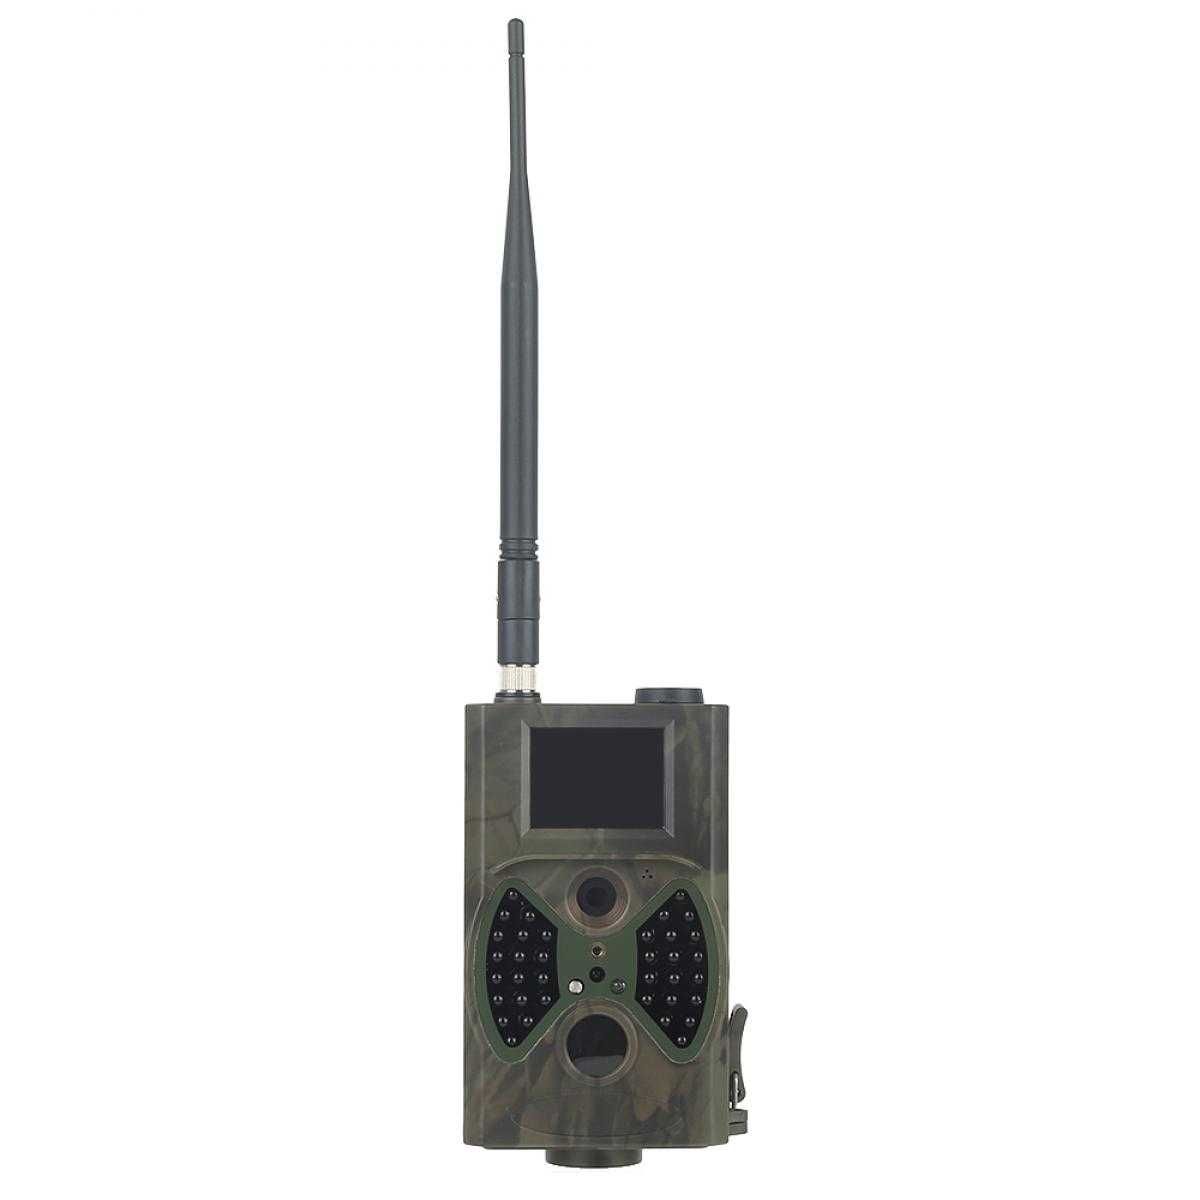 Фотопастка Suntek HC300M з GSM-модулем